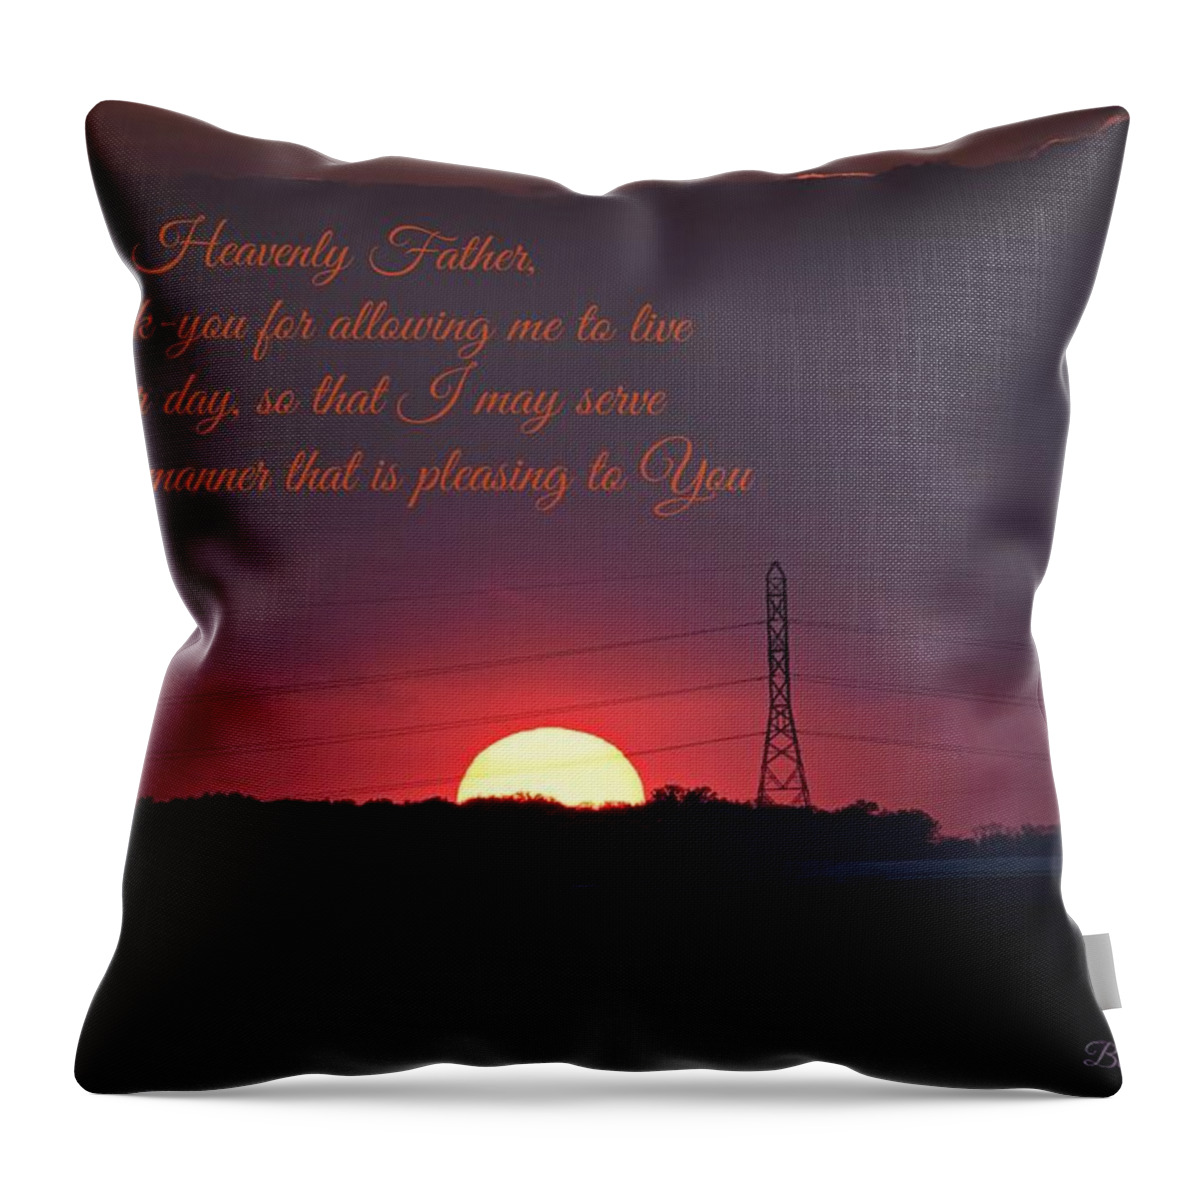 Sunset Throw Pillow featuring the photograph Sunset prayer by Kurt Keller